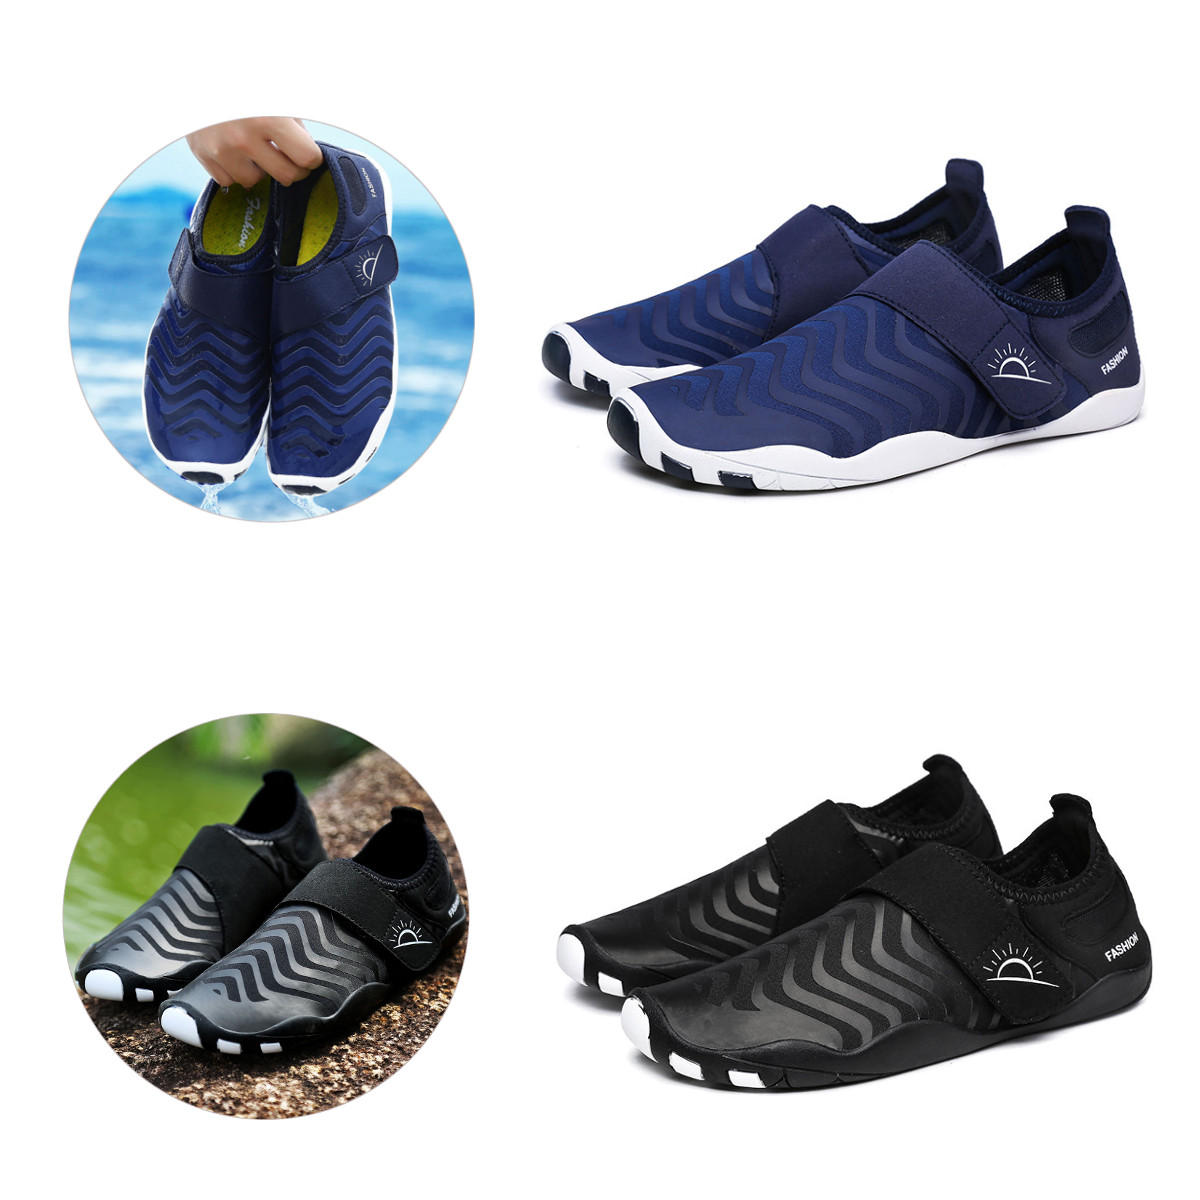 Giày lặn siêu nhẹ vạch, khô nhanh, dễ mang, phù hợp cho thể thao ngoài trời, bơi lội và yoga.